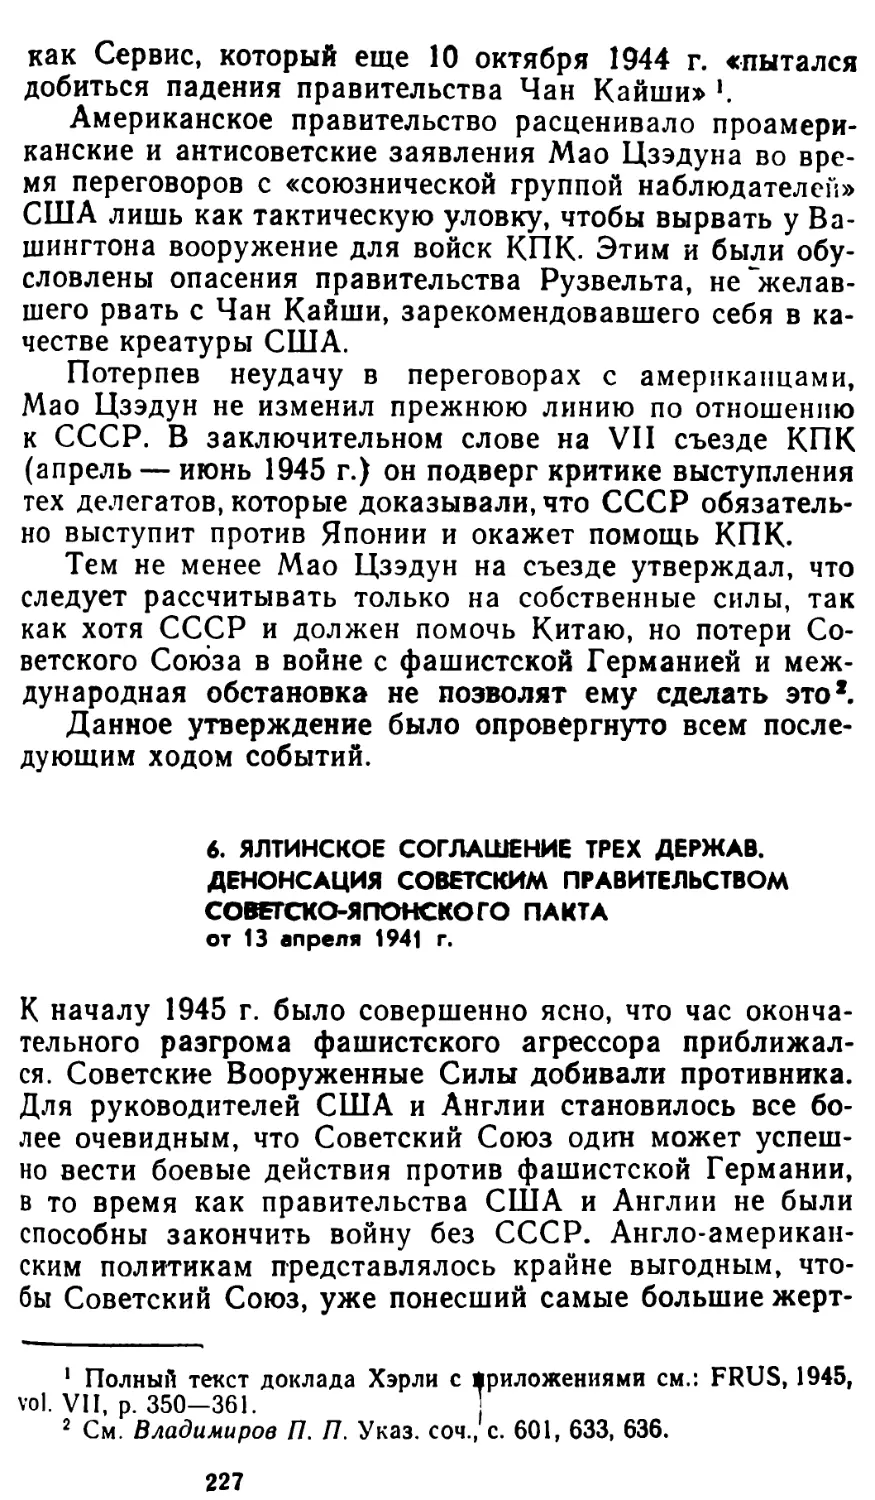 6. Ялтинское соглашение трех держав. Денонсация советским правительством советско-японского пакта от 13 апреля 1941 г